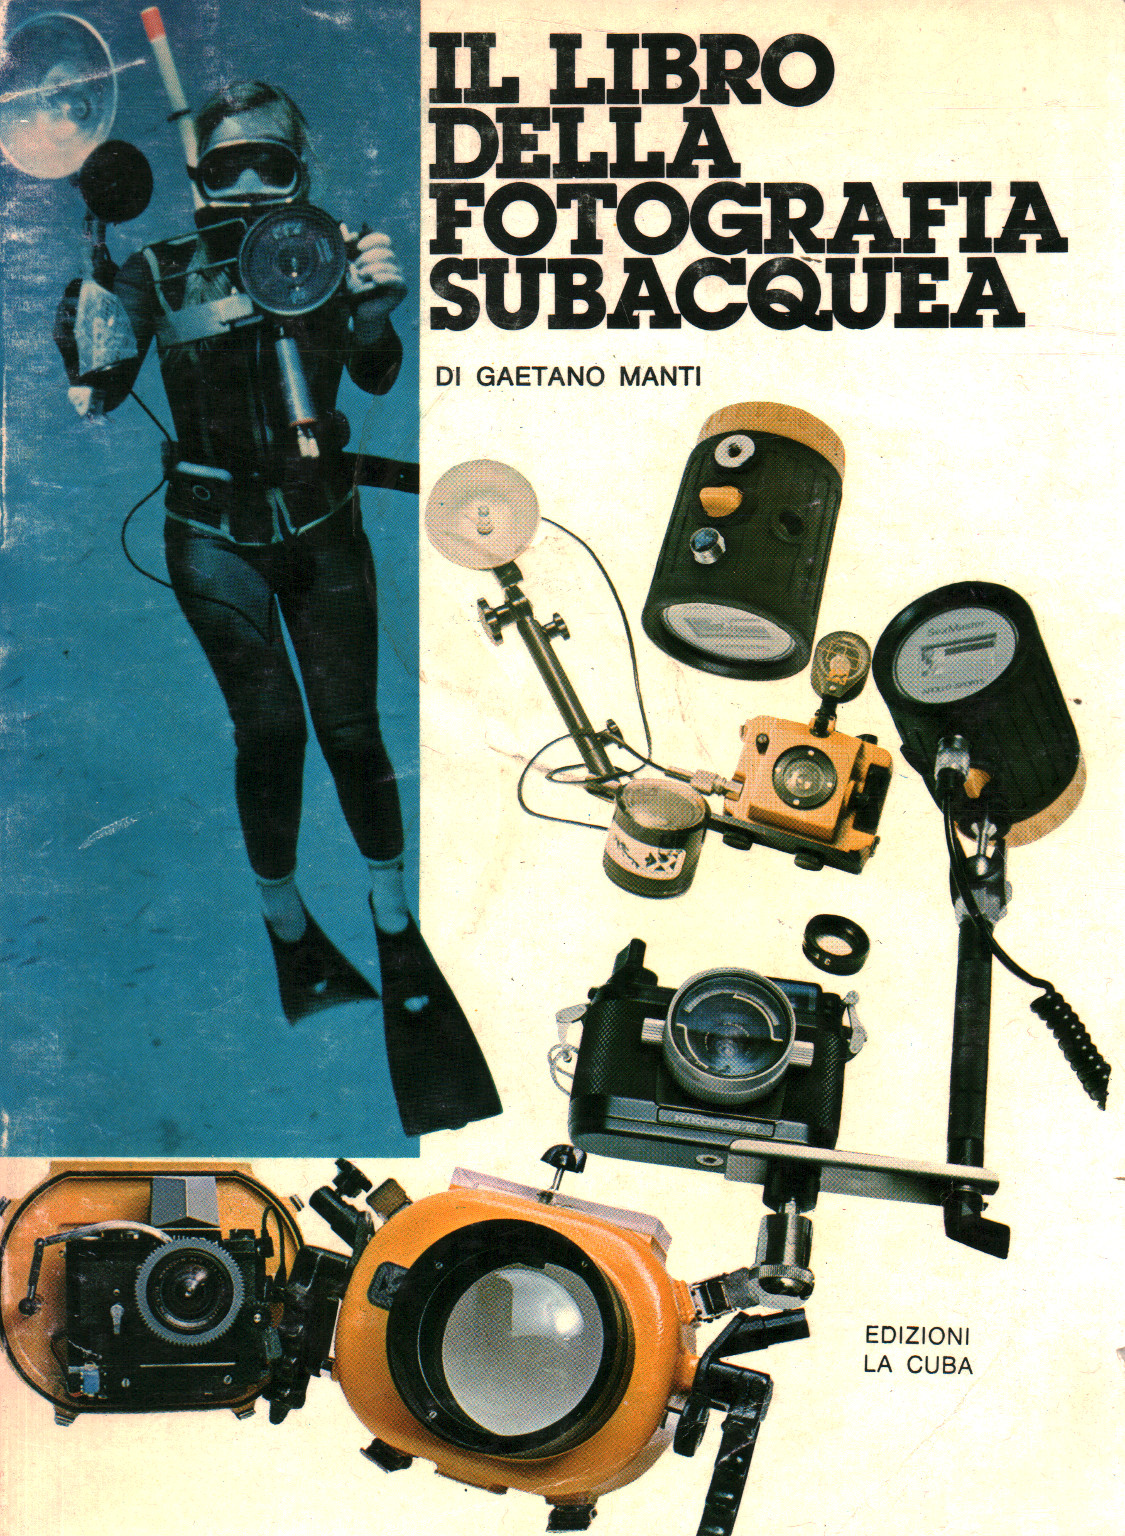 Il libro della fotografia subacquea, s.a.